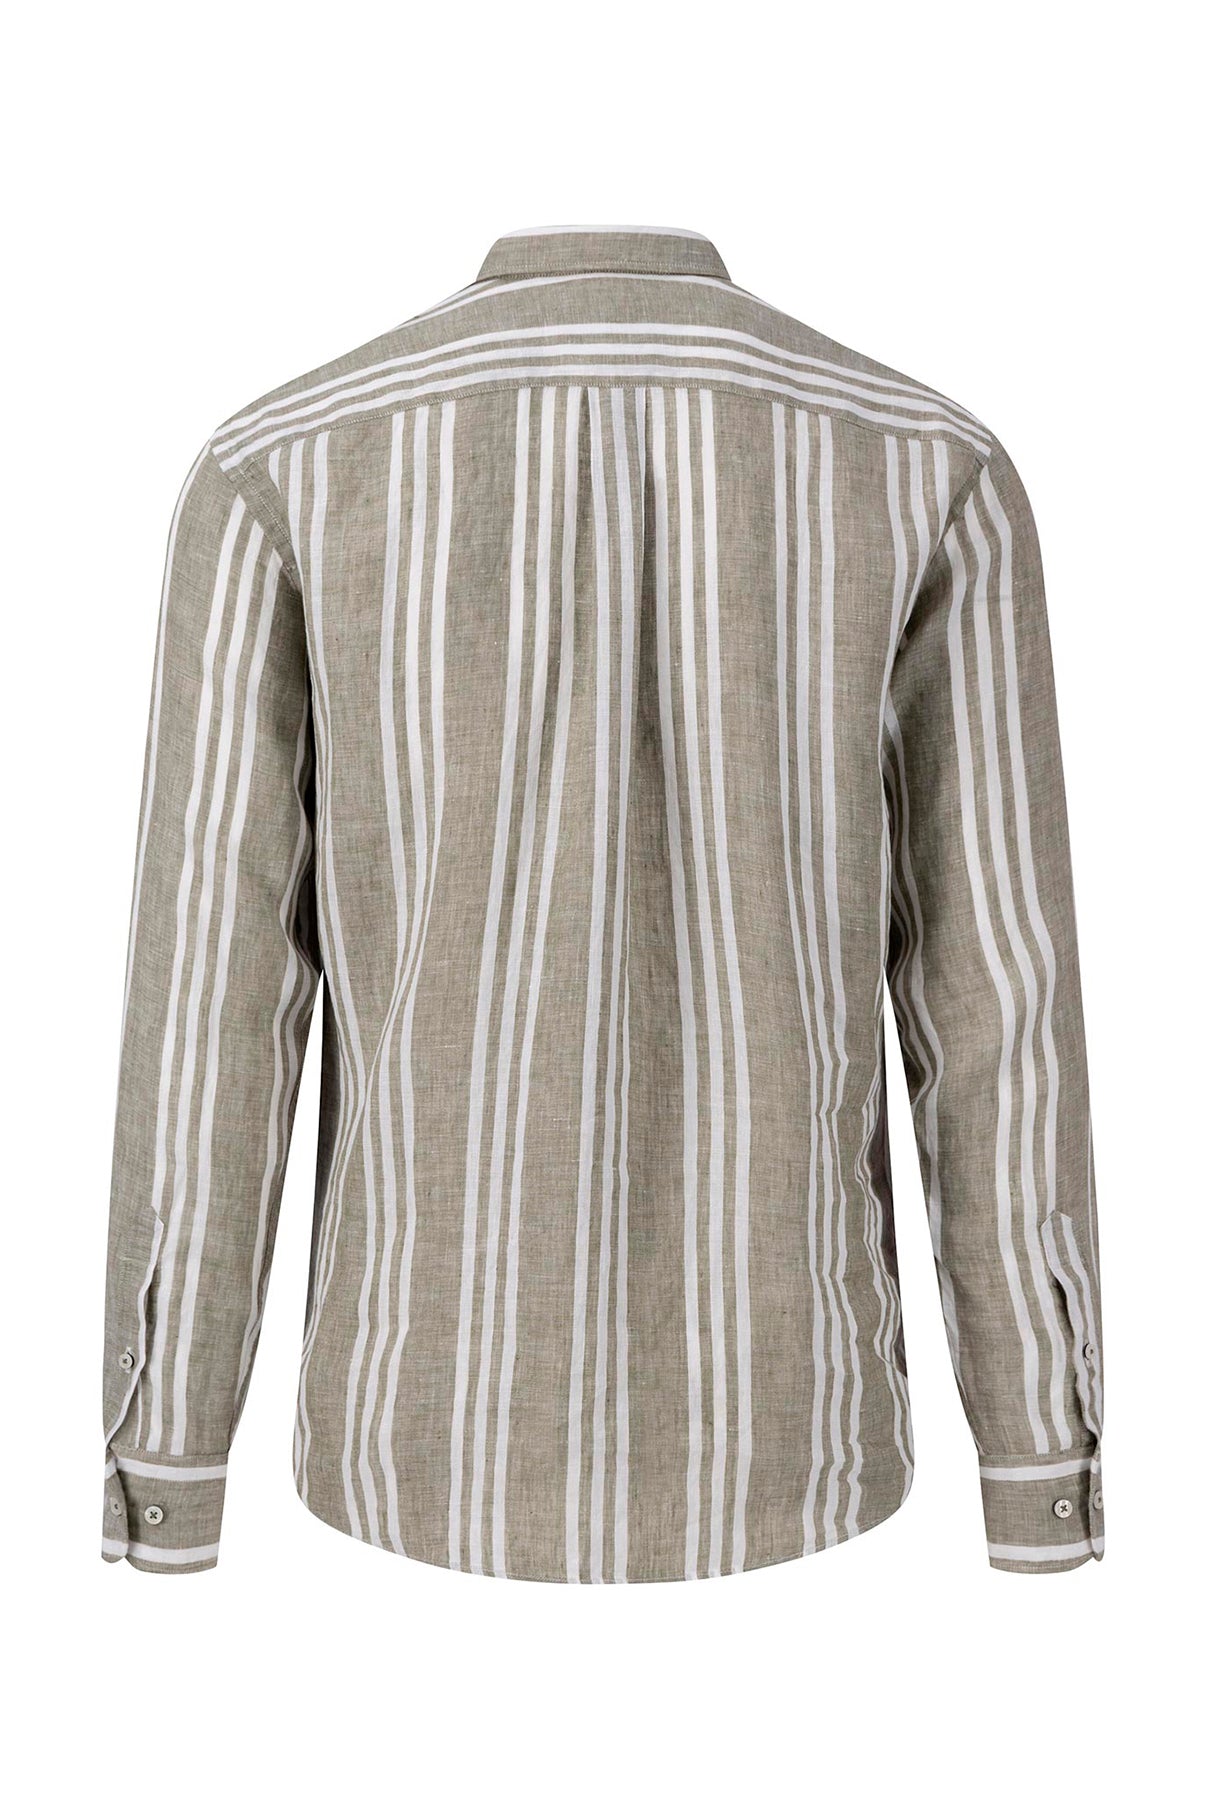 FYNCH-HATTON Skjorte LS Pure Linen Stripes